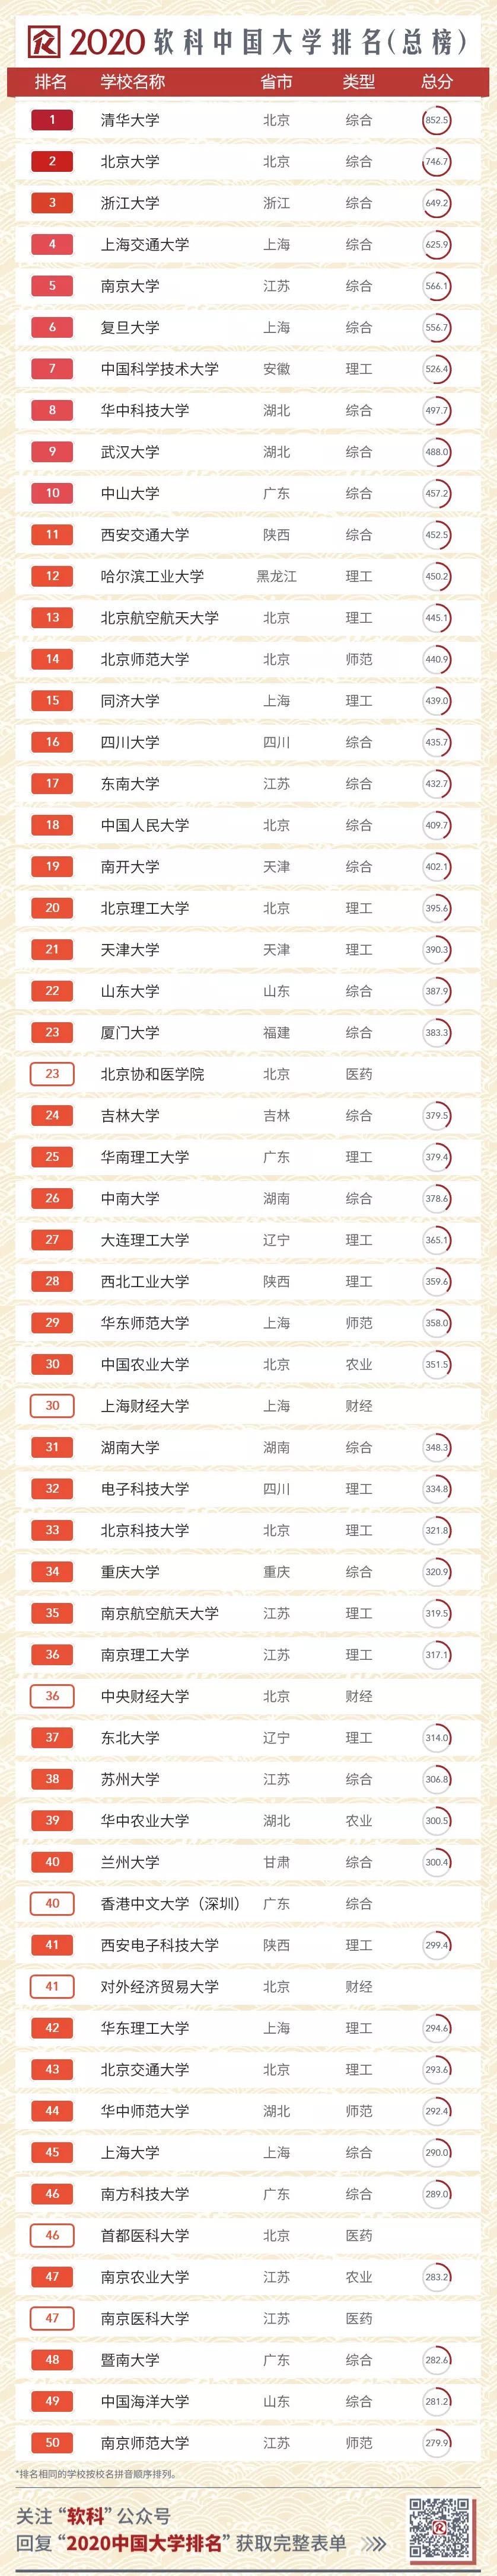 中国矿大排名2020最_2020软科中国最好大学排名300强榜单